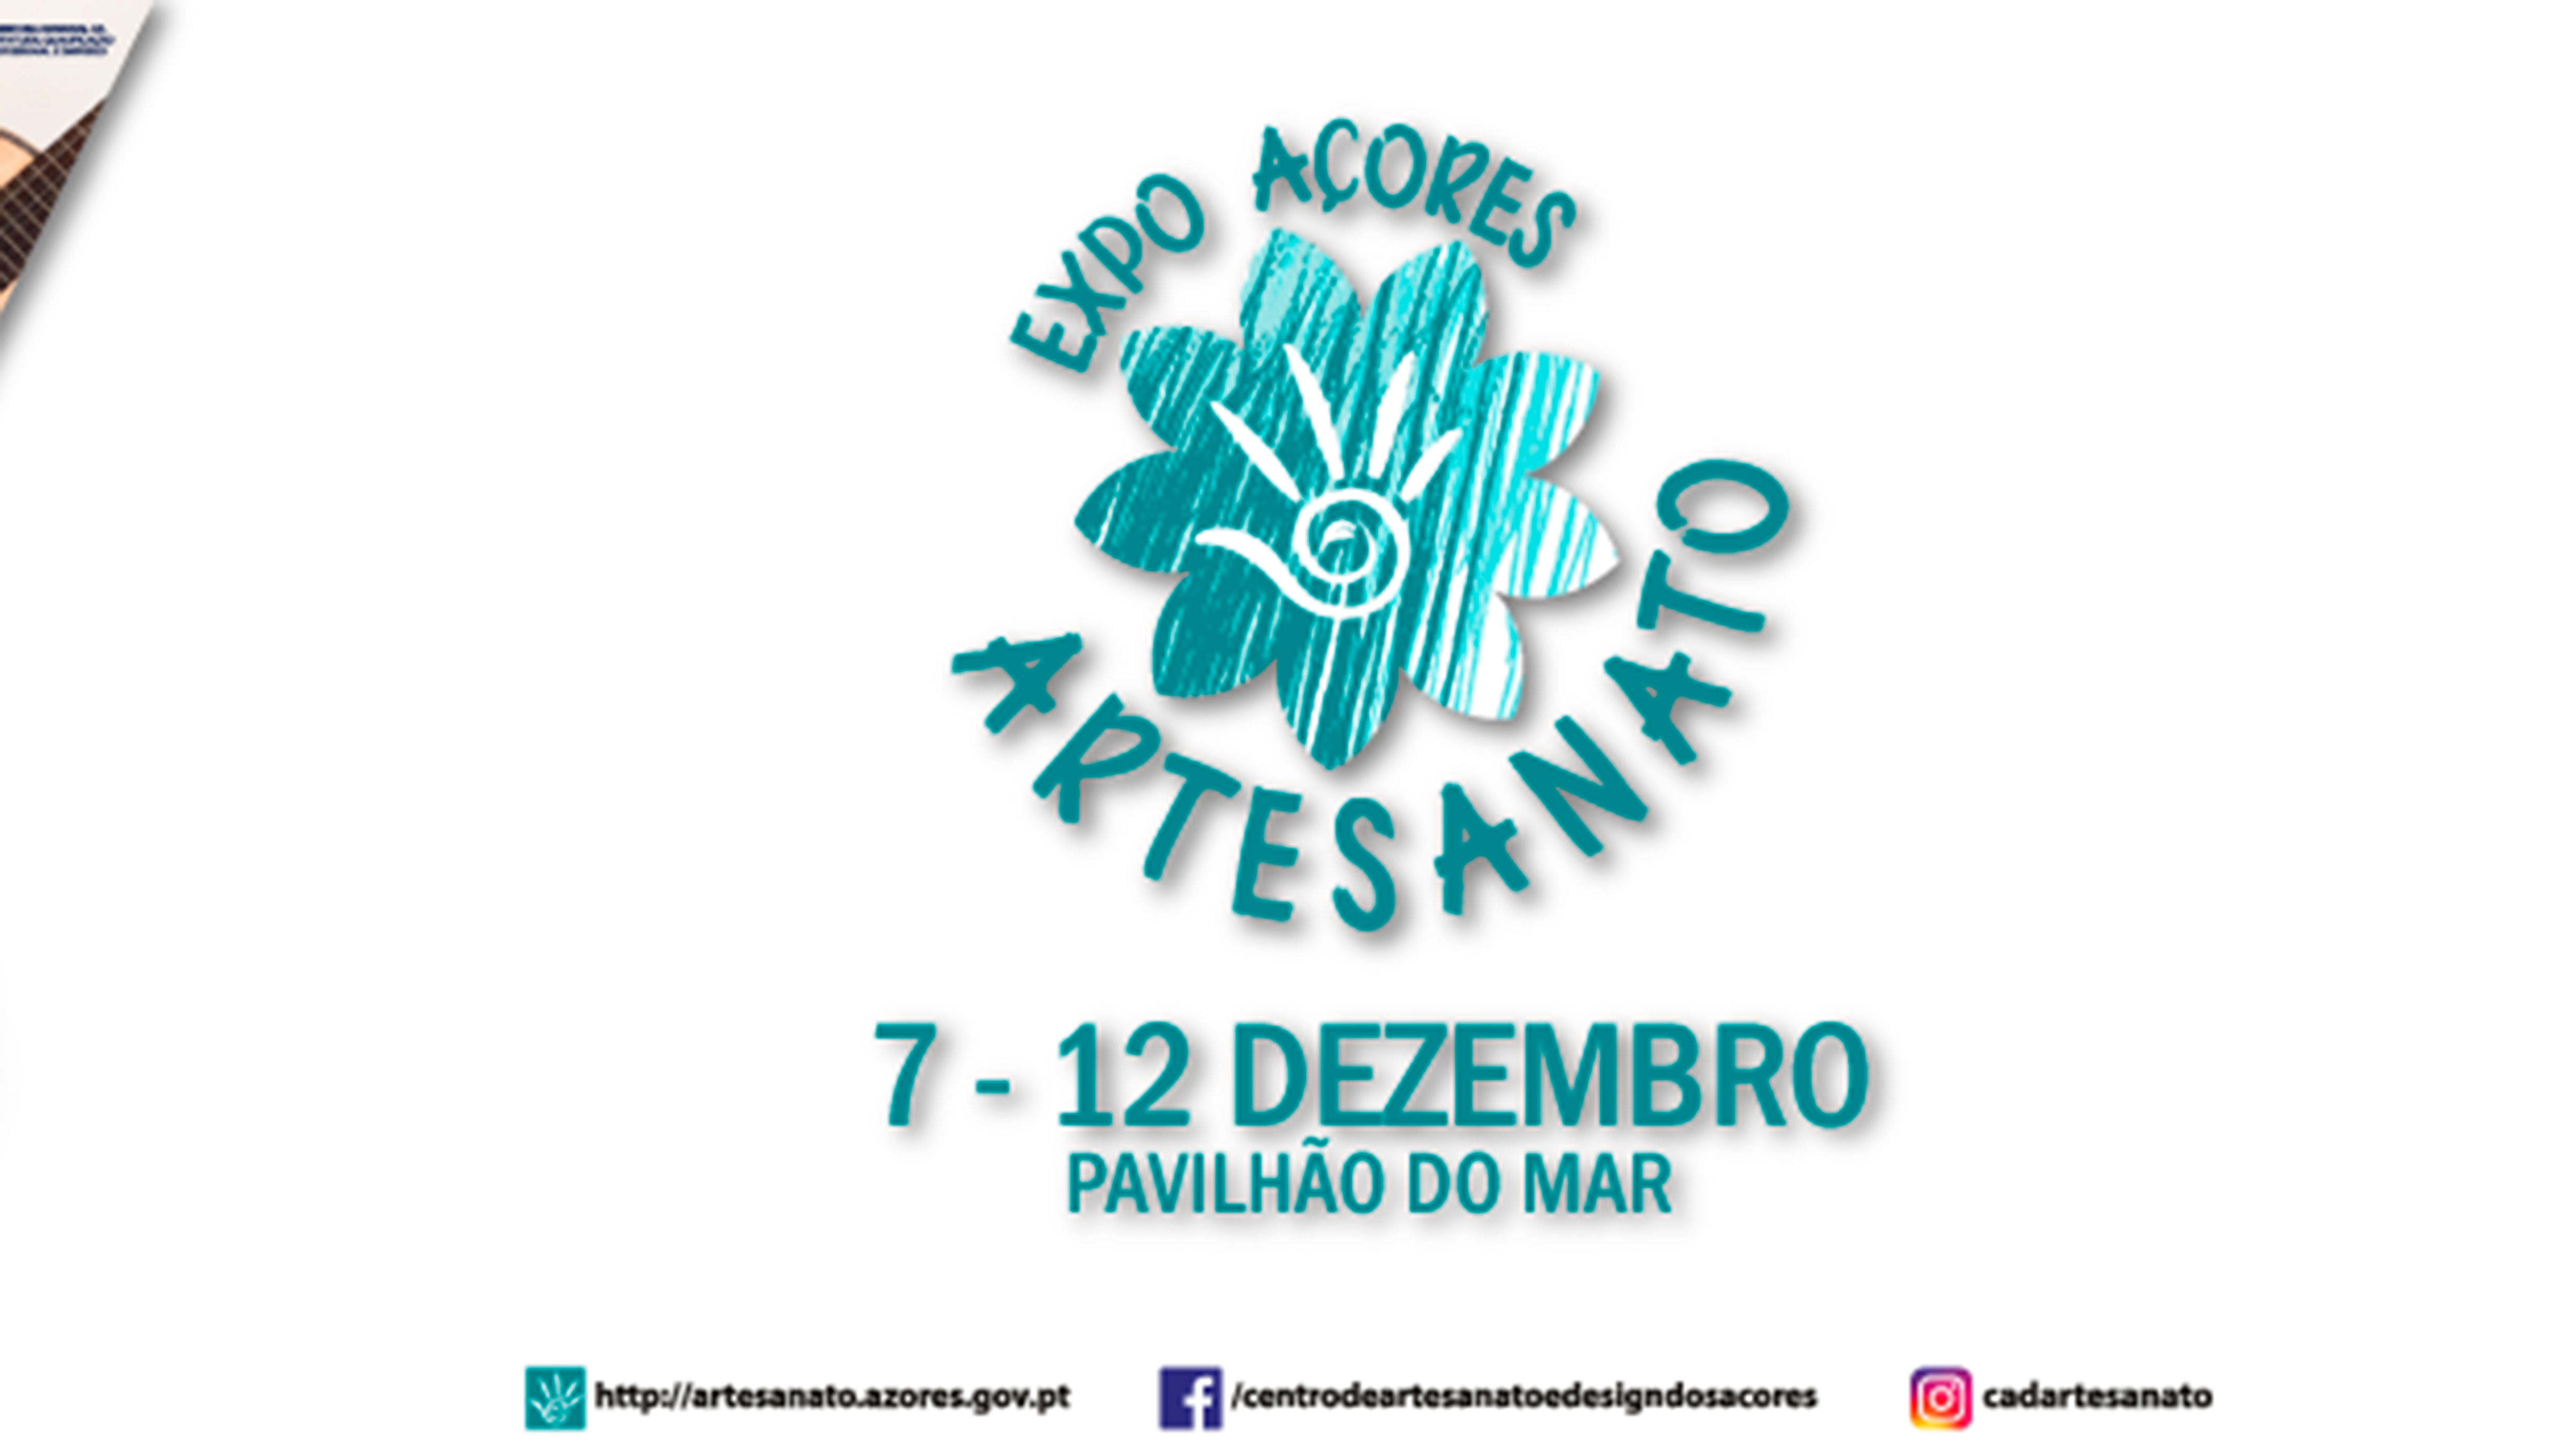 Expo Açores Artesanato de 7 a 12 de dezembro no Pavilhão do Mar